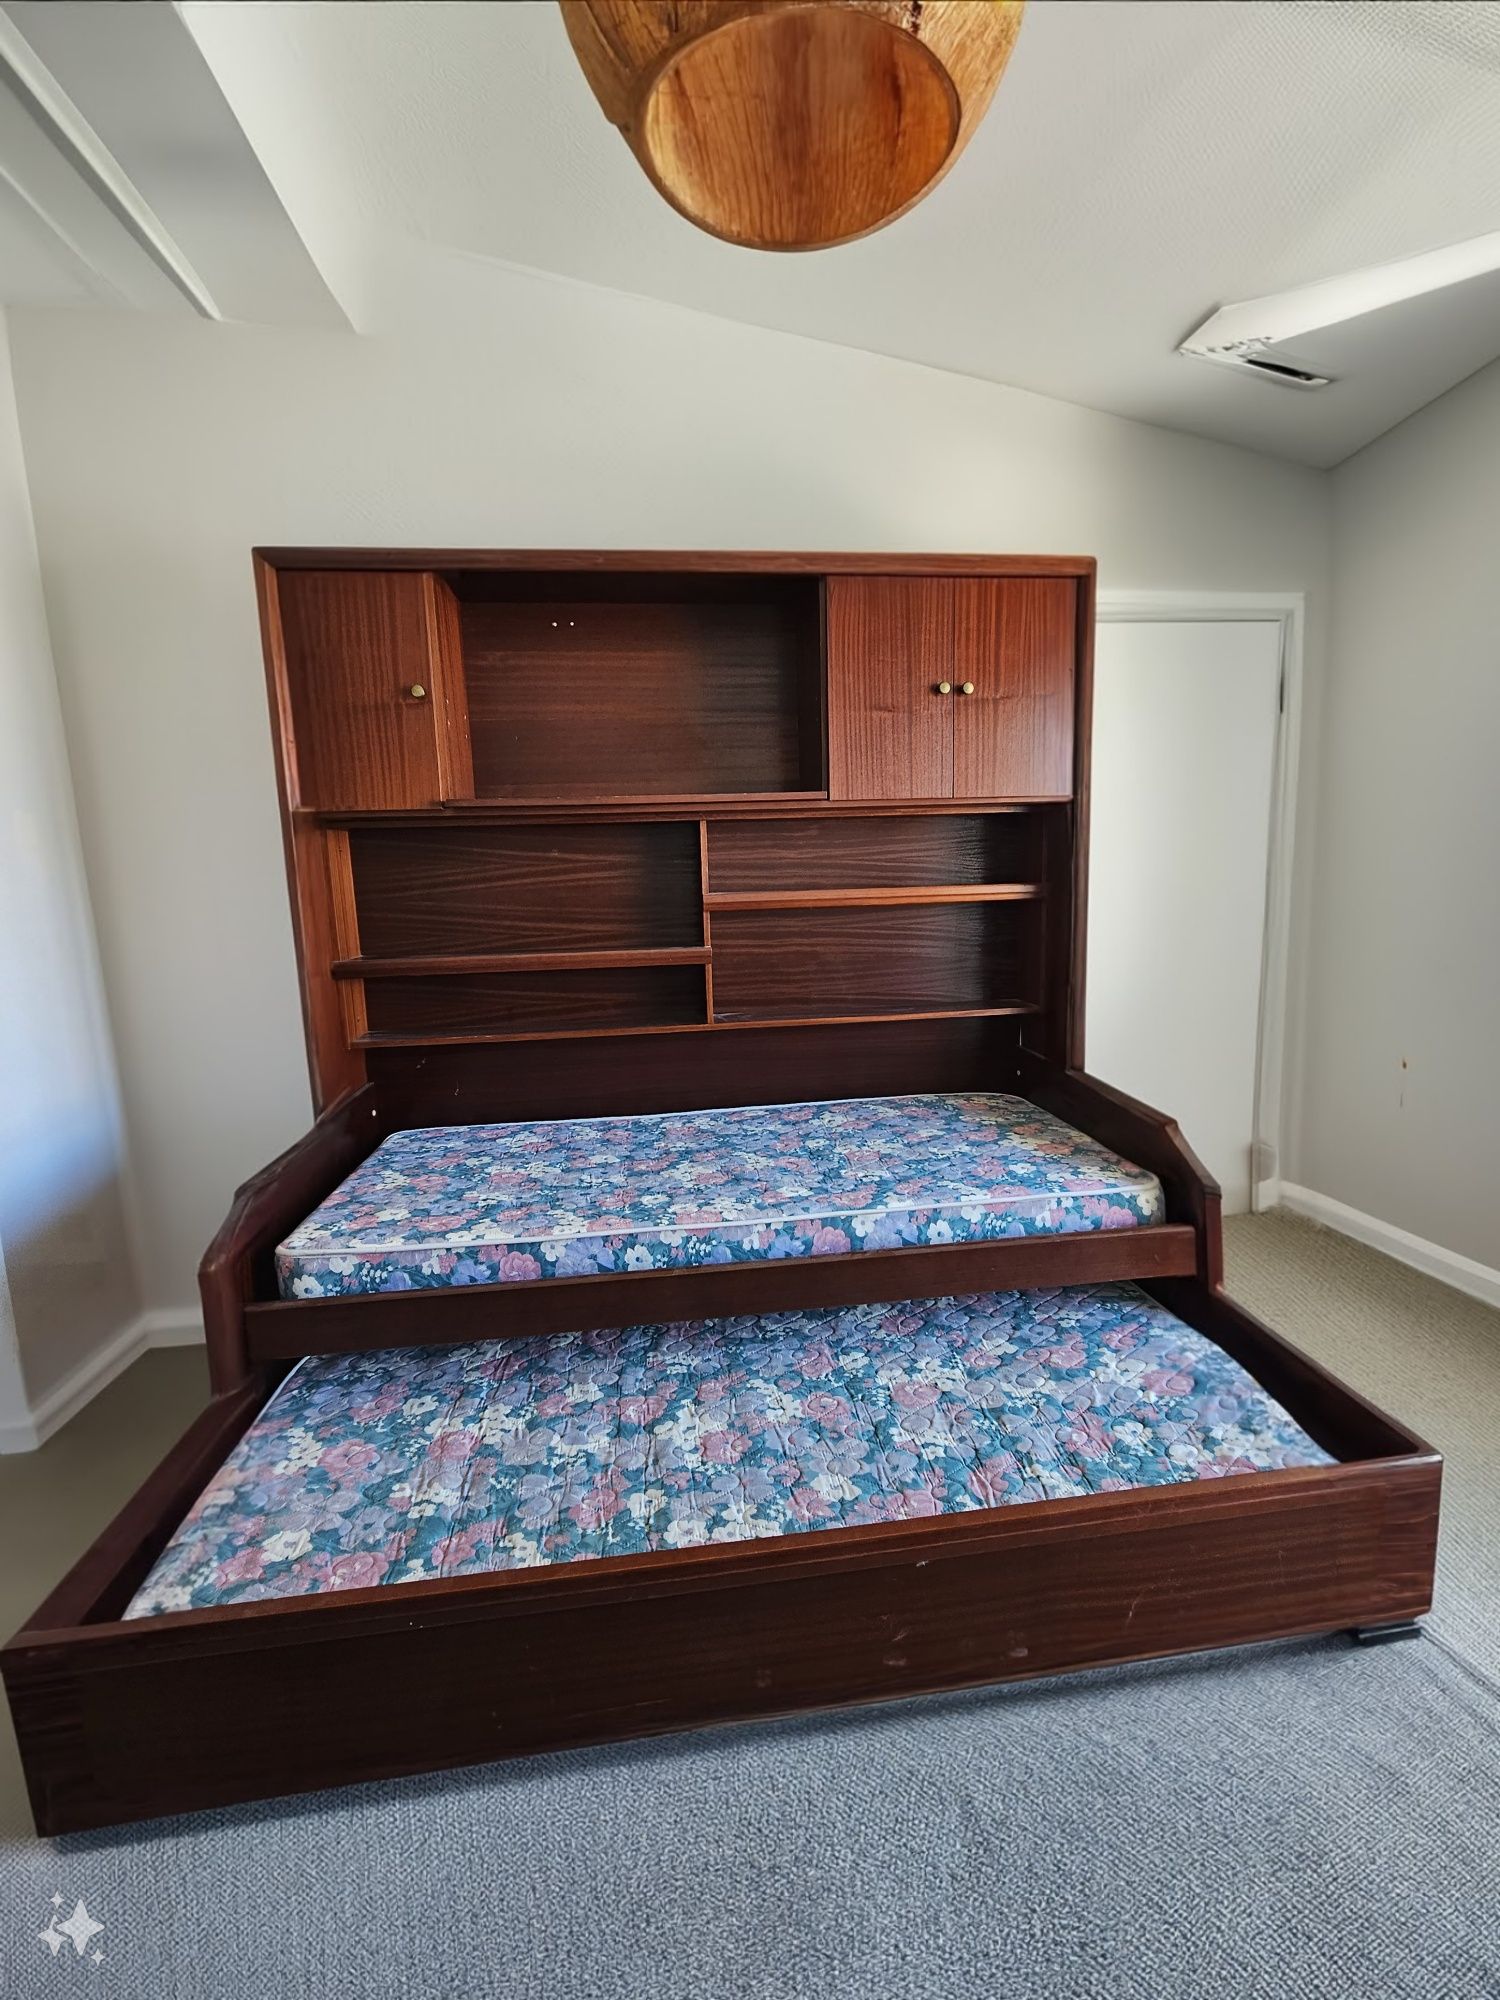 Móvel sala com duas camas individuais